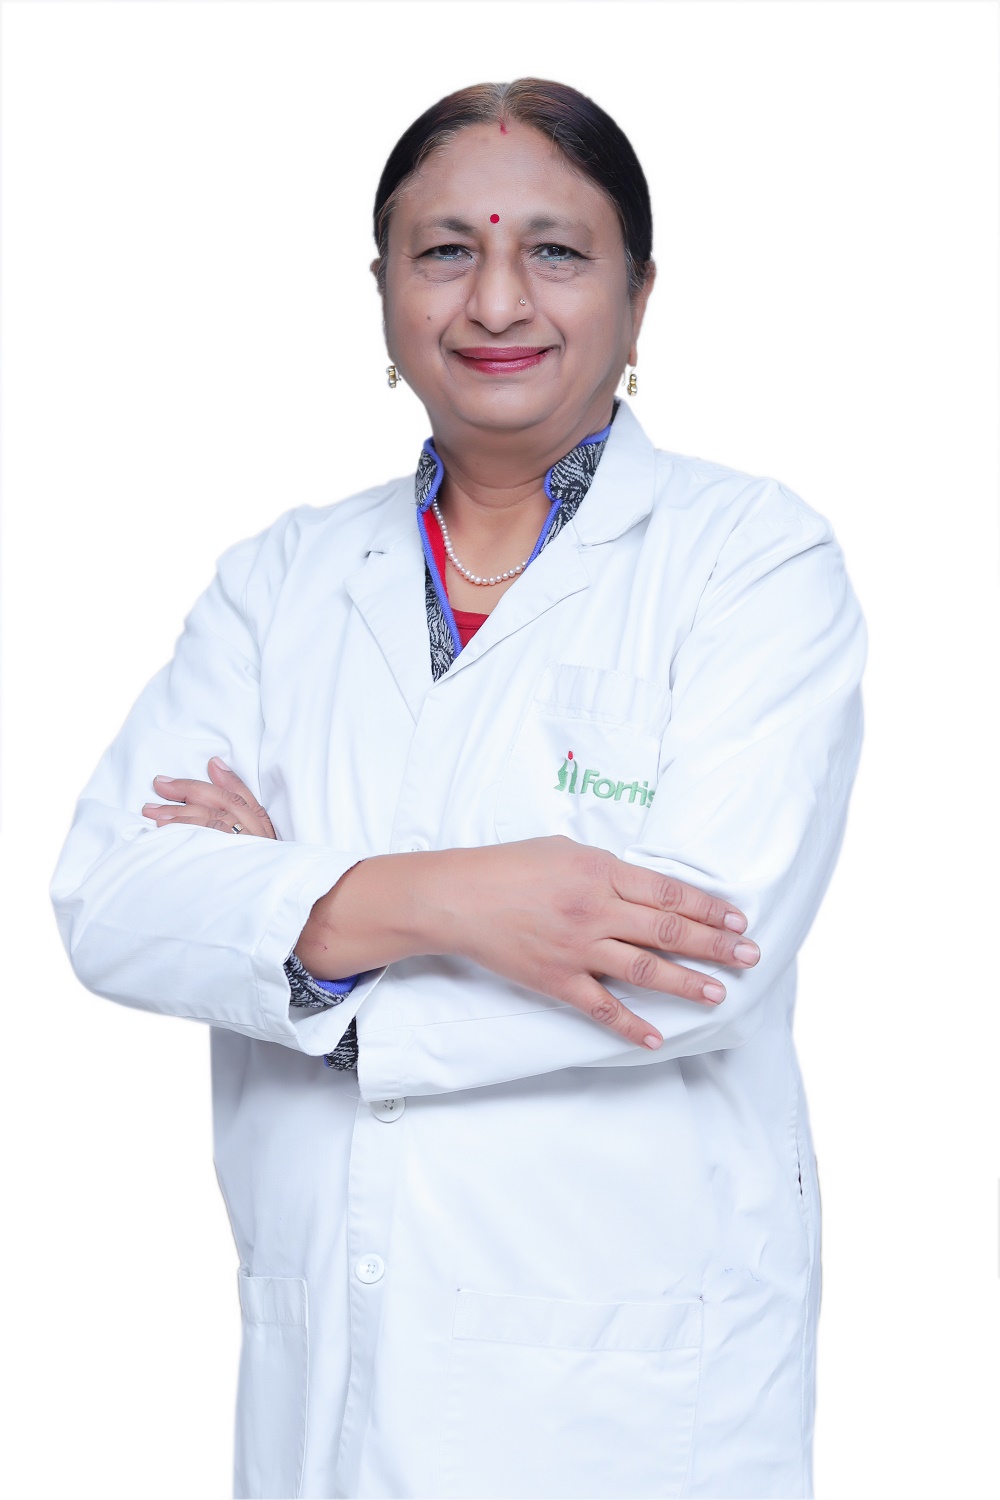 Rita Arun Mhaskar博士